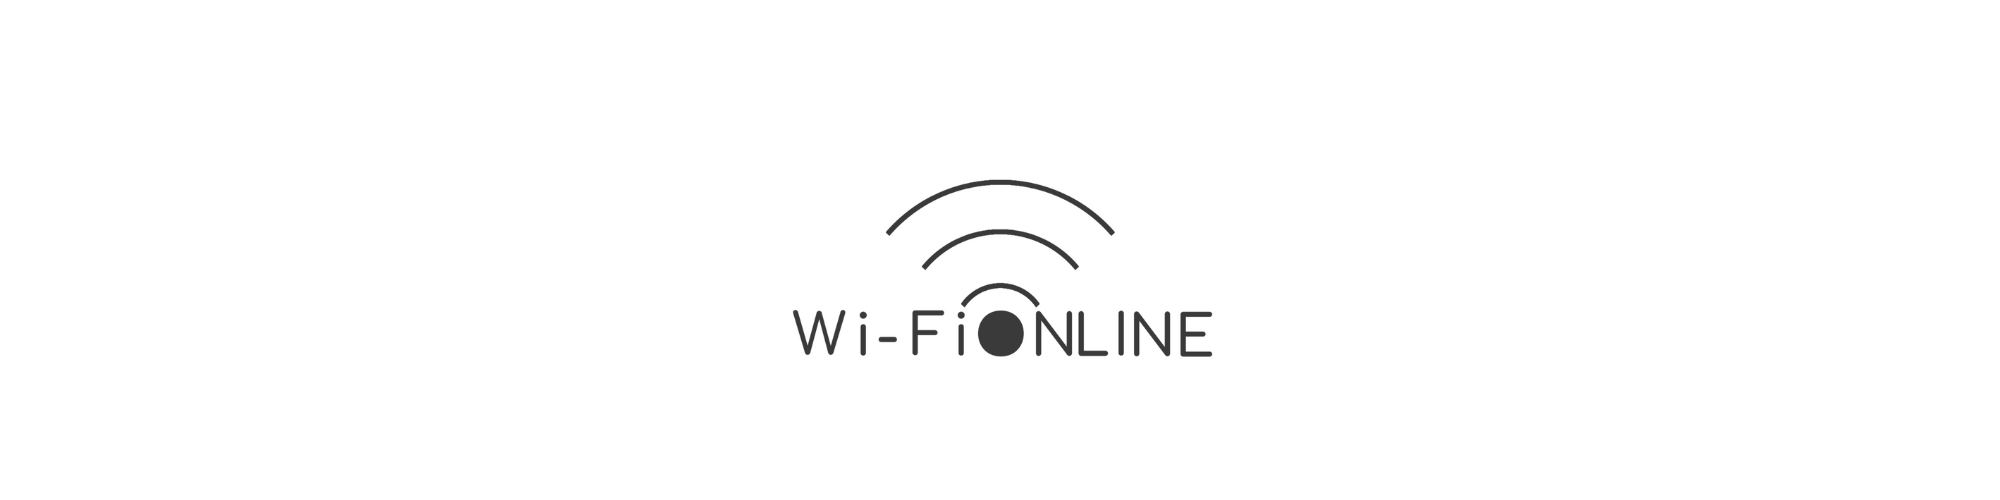 Wi-Fi ONLINE